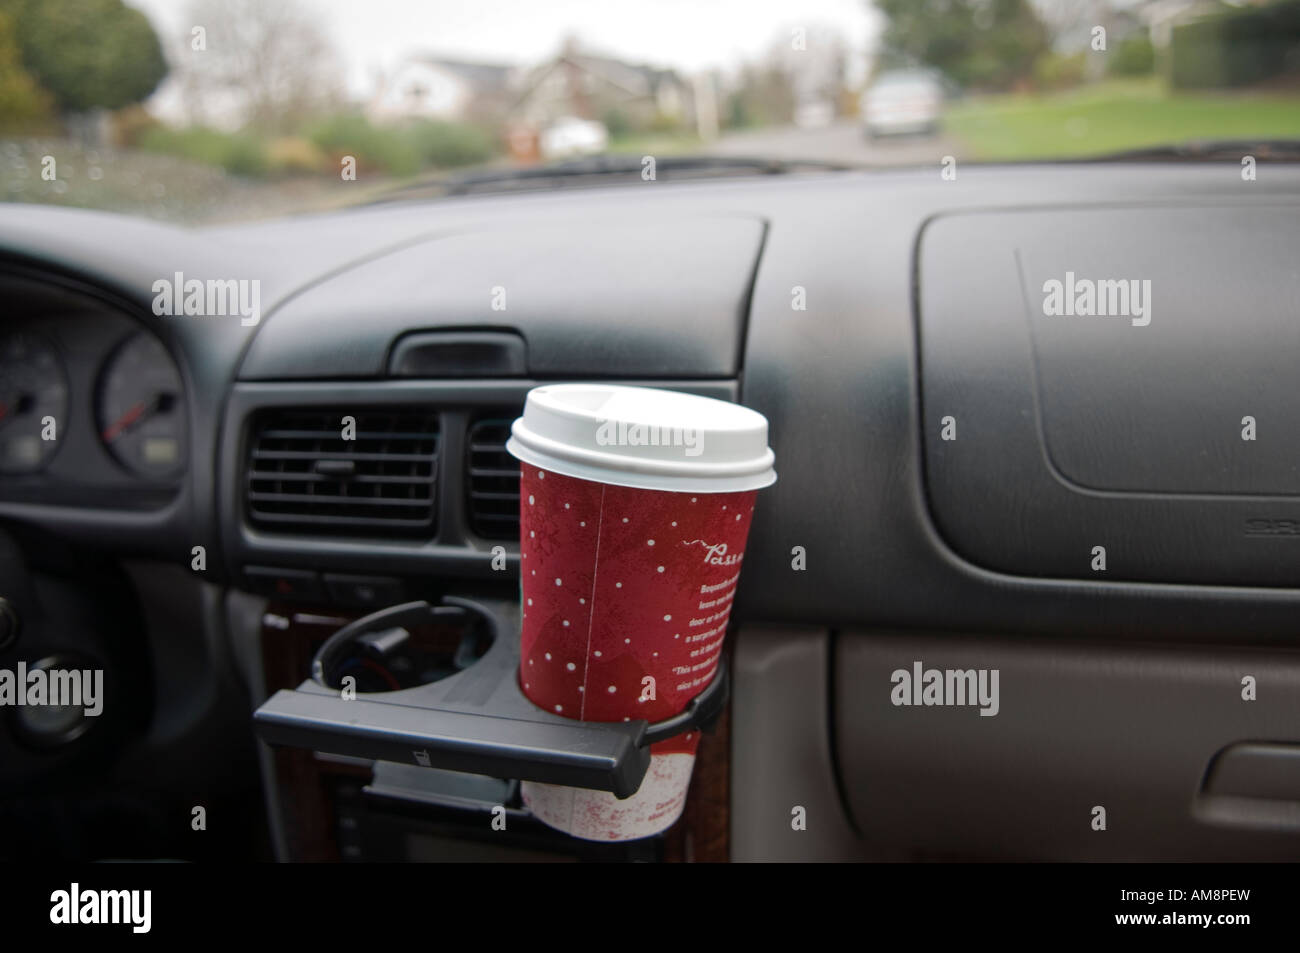 https://c8.alamy.com/compde/am8pew/kaffeetasse-in-einen-becherhalter-im-auto-am8pew.jpg